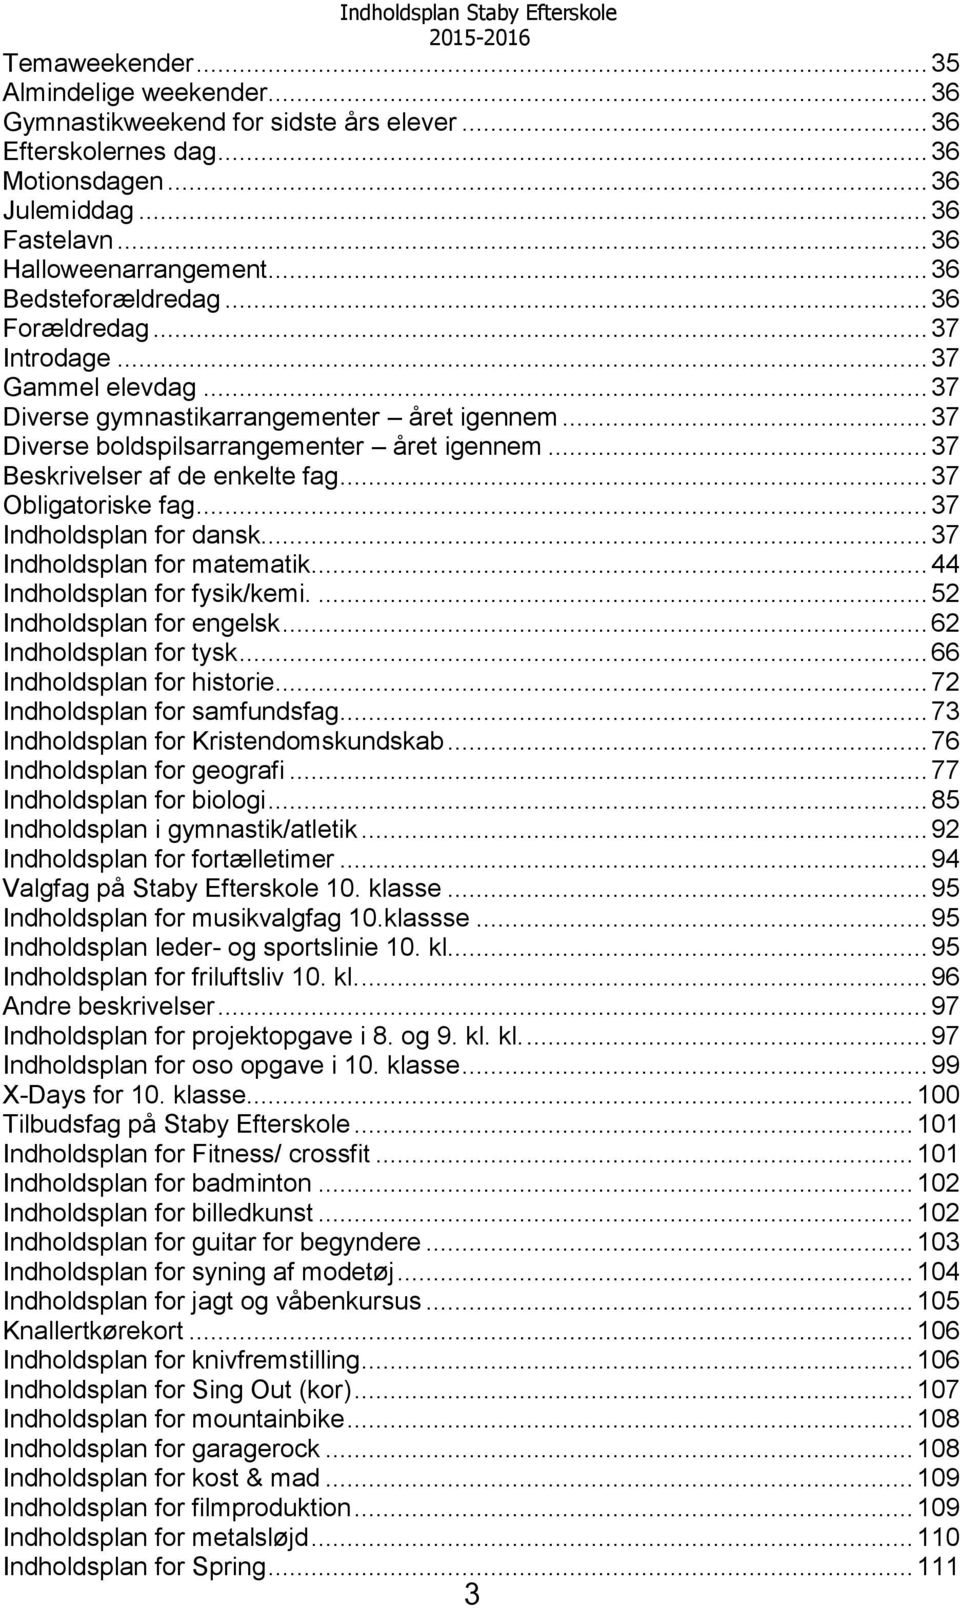 .. 37 Beskrivelser af de enkelte fag... 37 Obligatoriske fag... 37 Indholdsplan for dansk... 37 Indholdsplan for matematik... 44 Indholdsplan for fysik/kemi.... 52 Indholdsplan for engelsk.